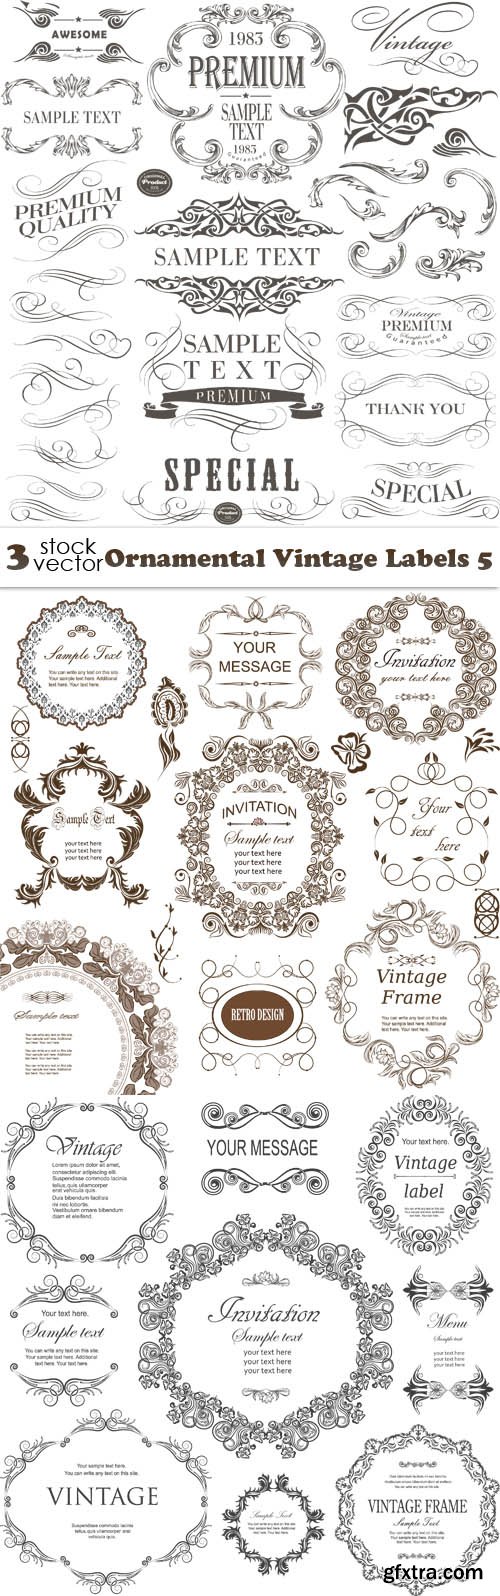 Vectors - Ornamental Vintage Labels 5